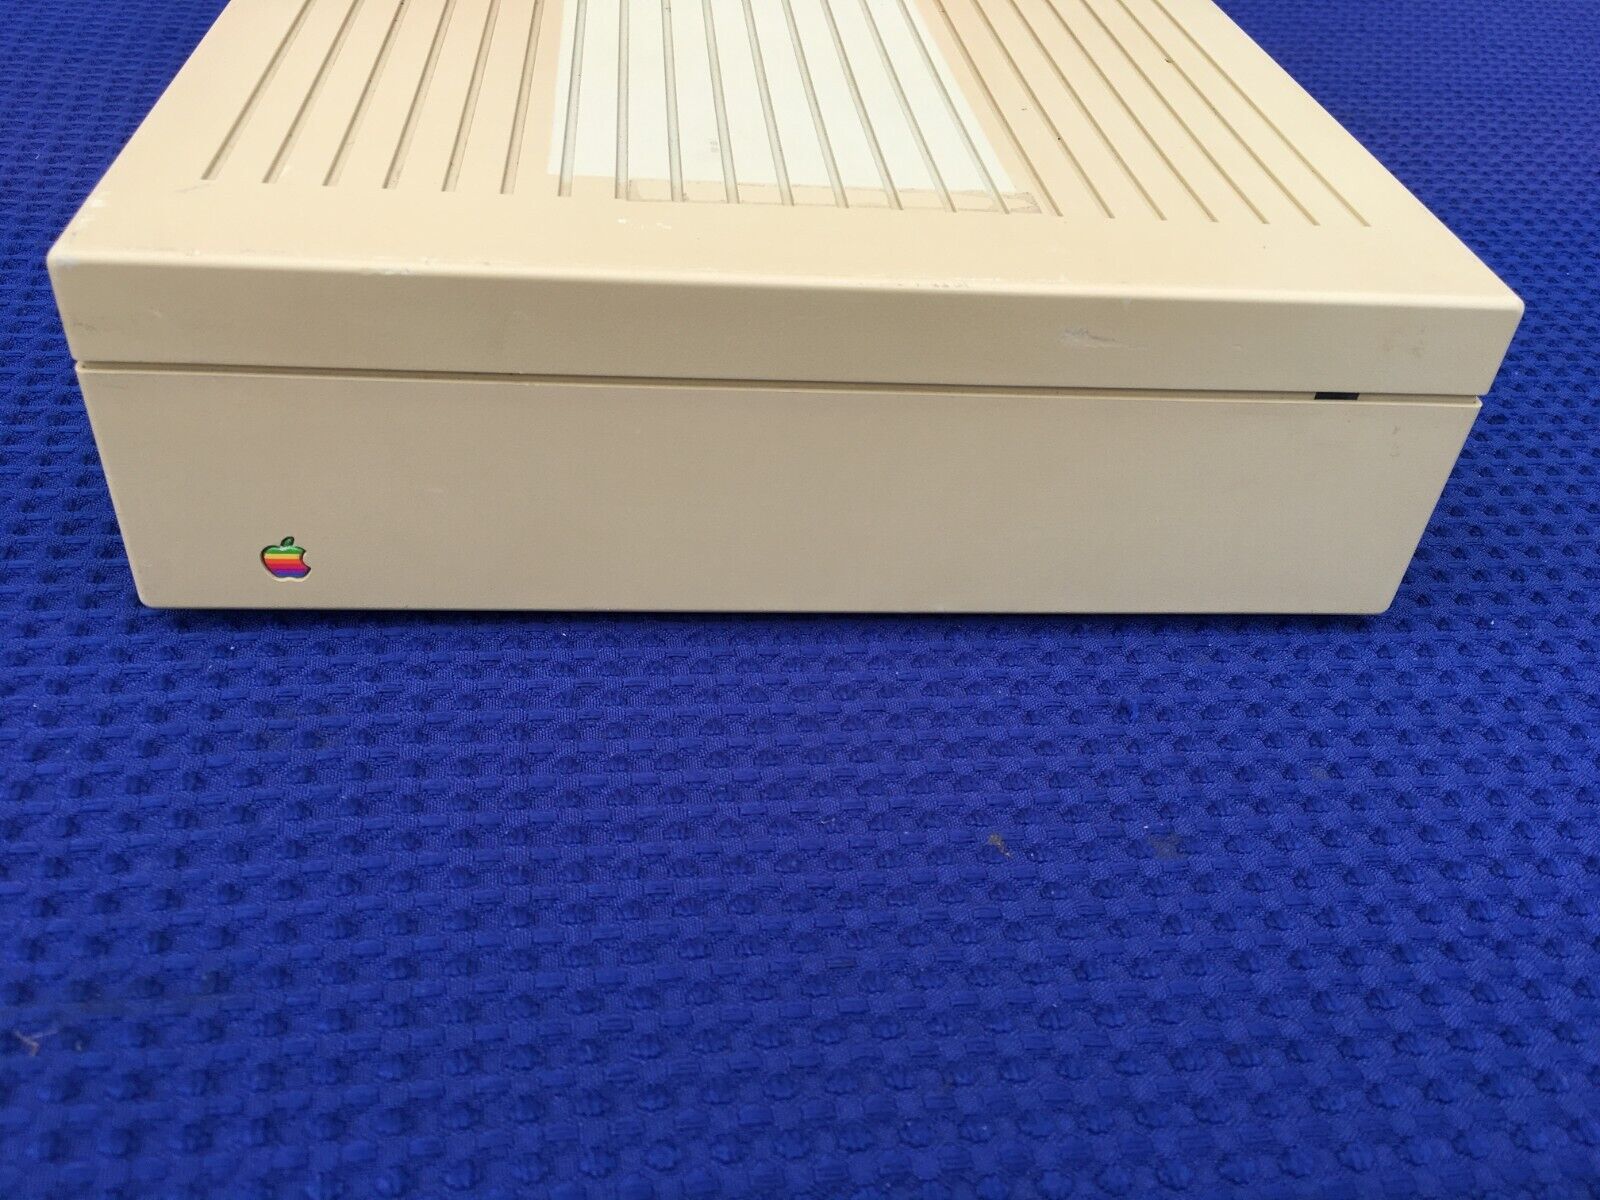 Vintage Apple 20 SC External SCSI Hard Drive M2603 Spins Up Rodime Inside